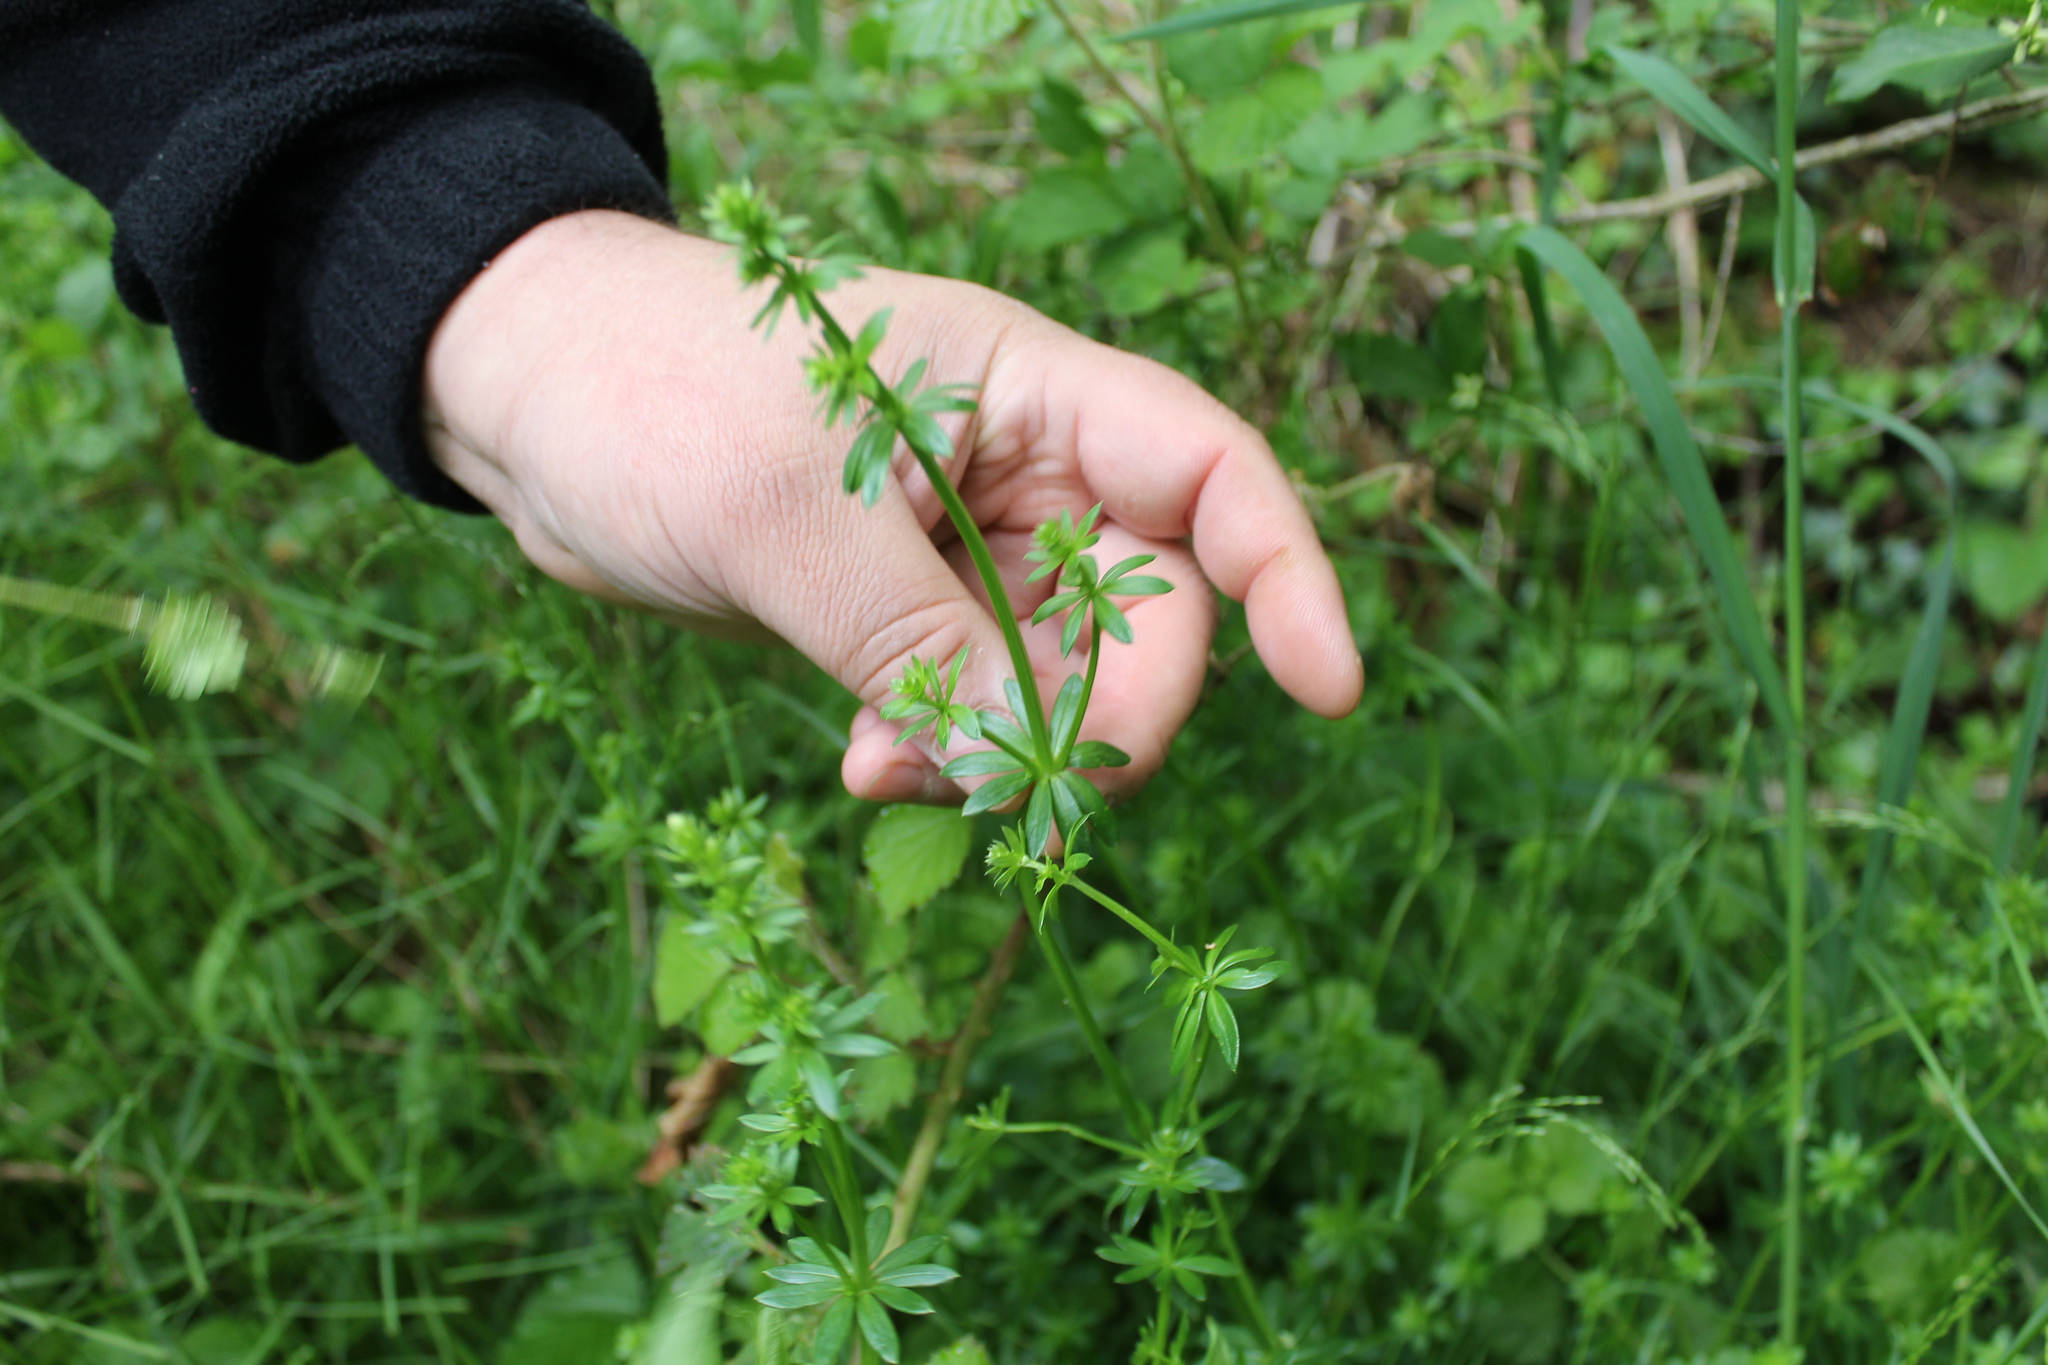 herbes aromatiques, les 3 très bonnes raisons de les manger